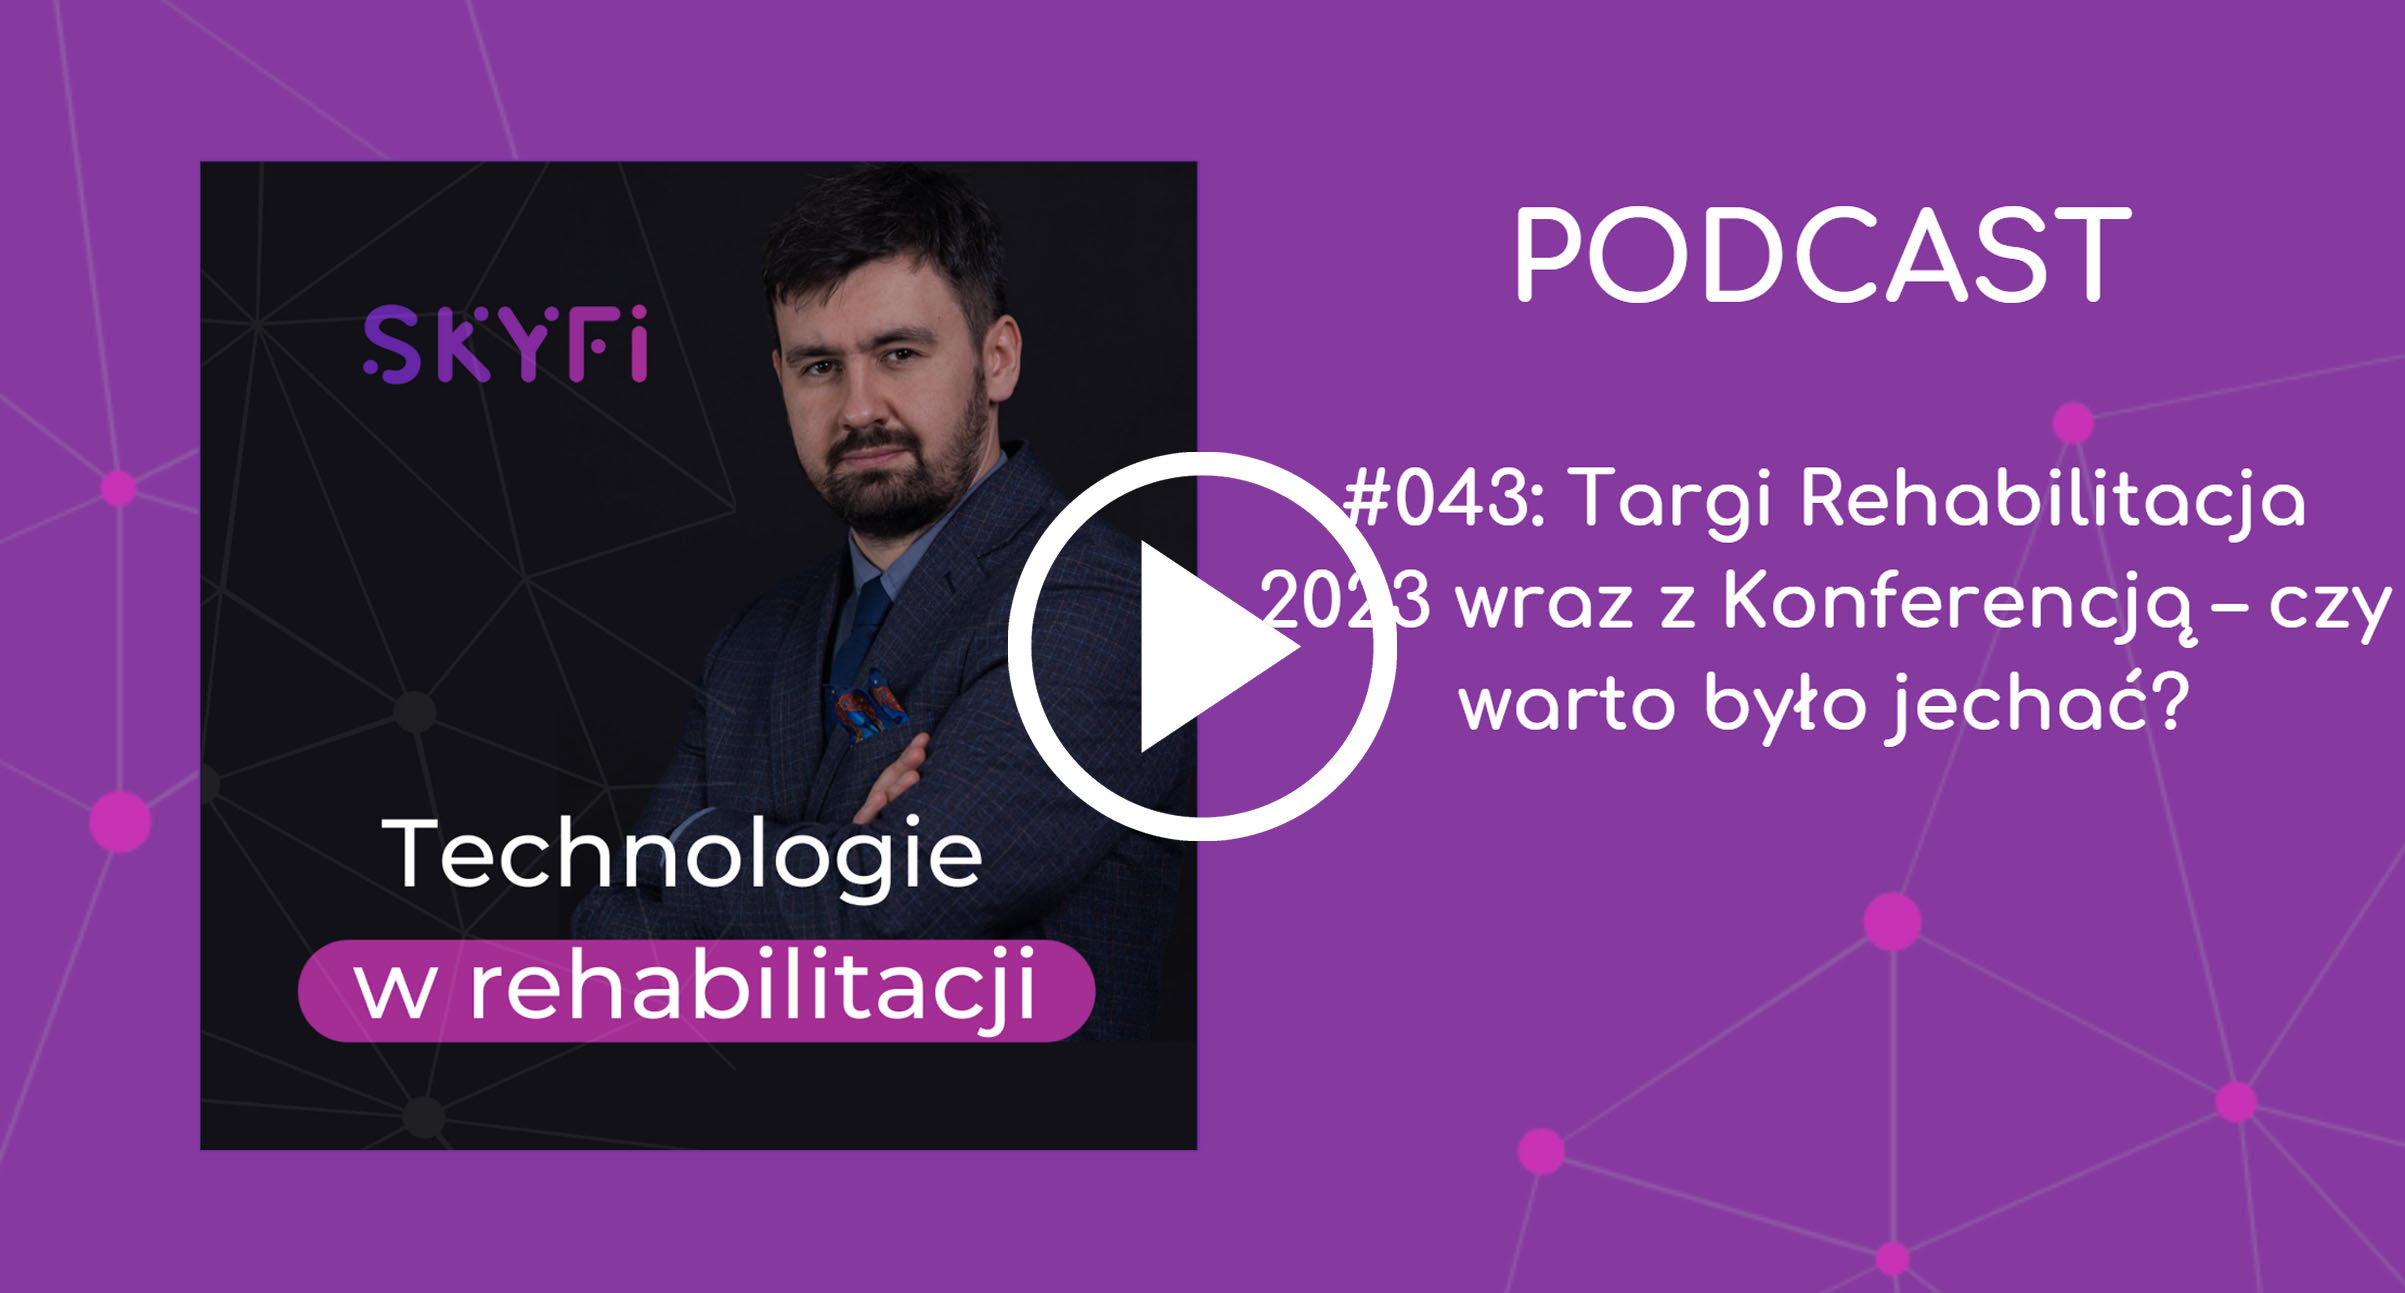 Podcast-43-Targi-Rehabilitacyjne-rehabilitacja-robotyka-w-rehabilitacji-Skyfi